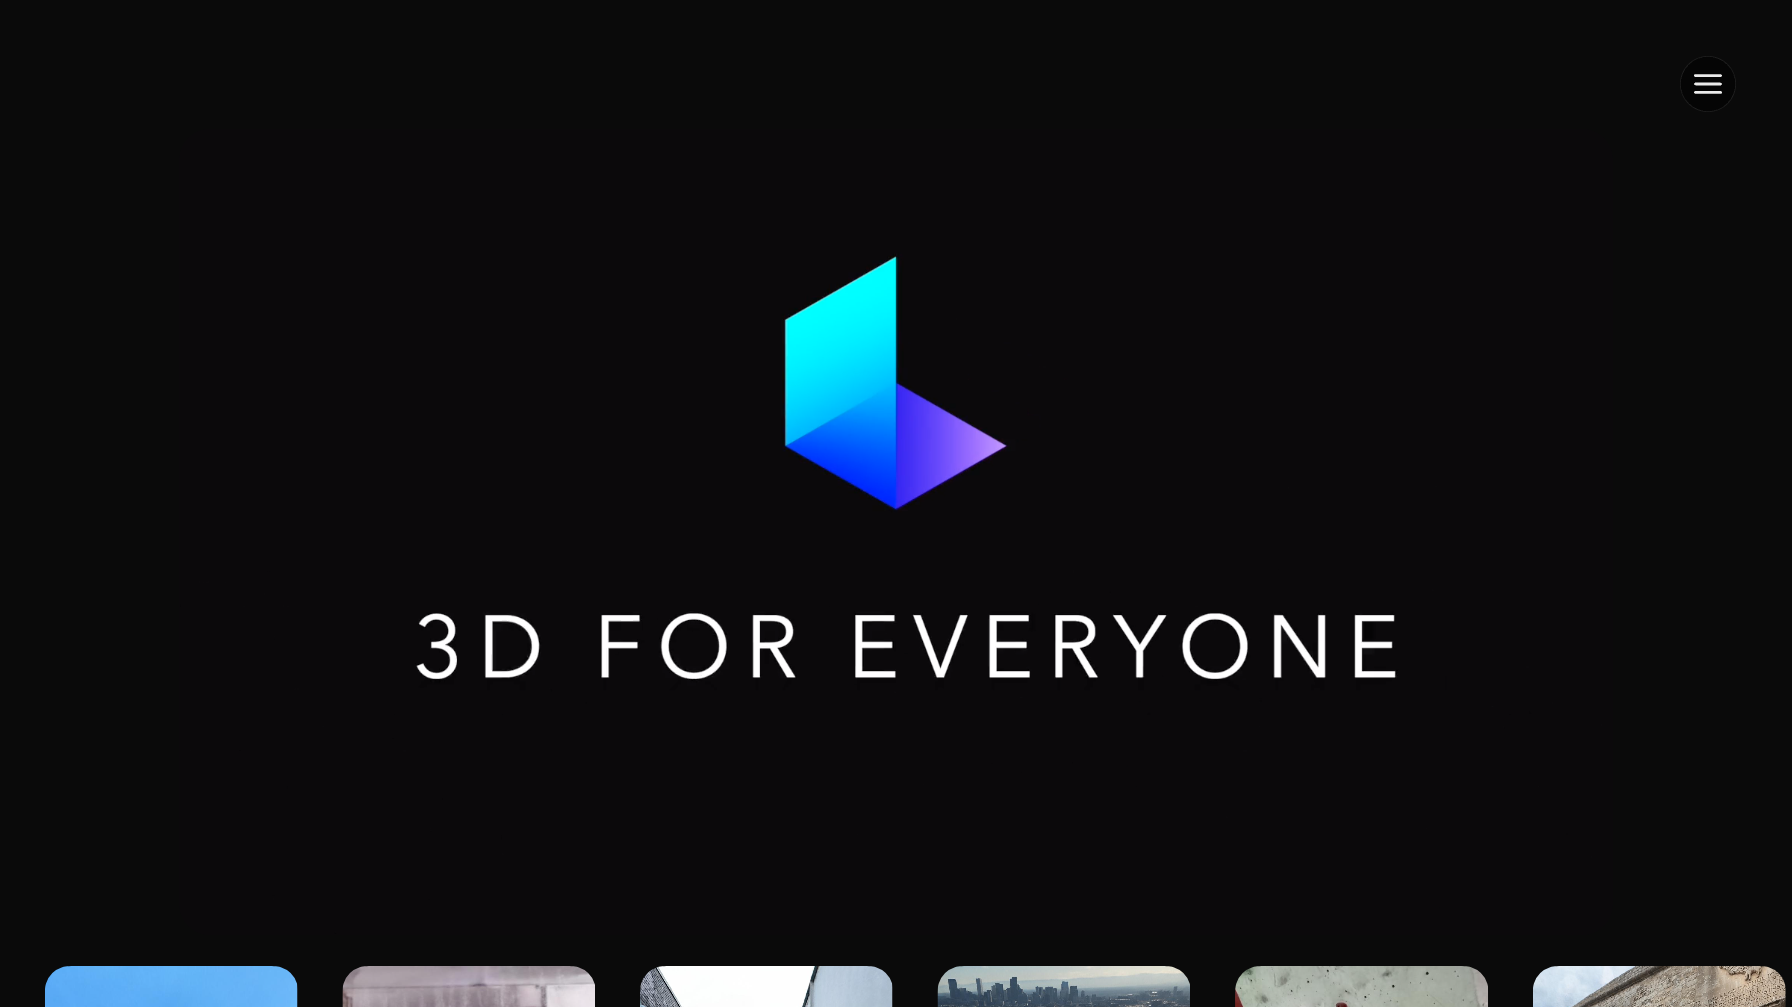 Luma AI - Capture and Experience the World in Lifelike 3D - Appndo